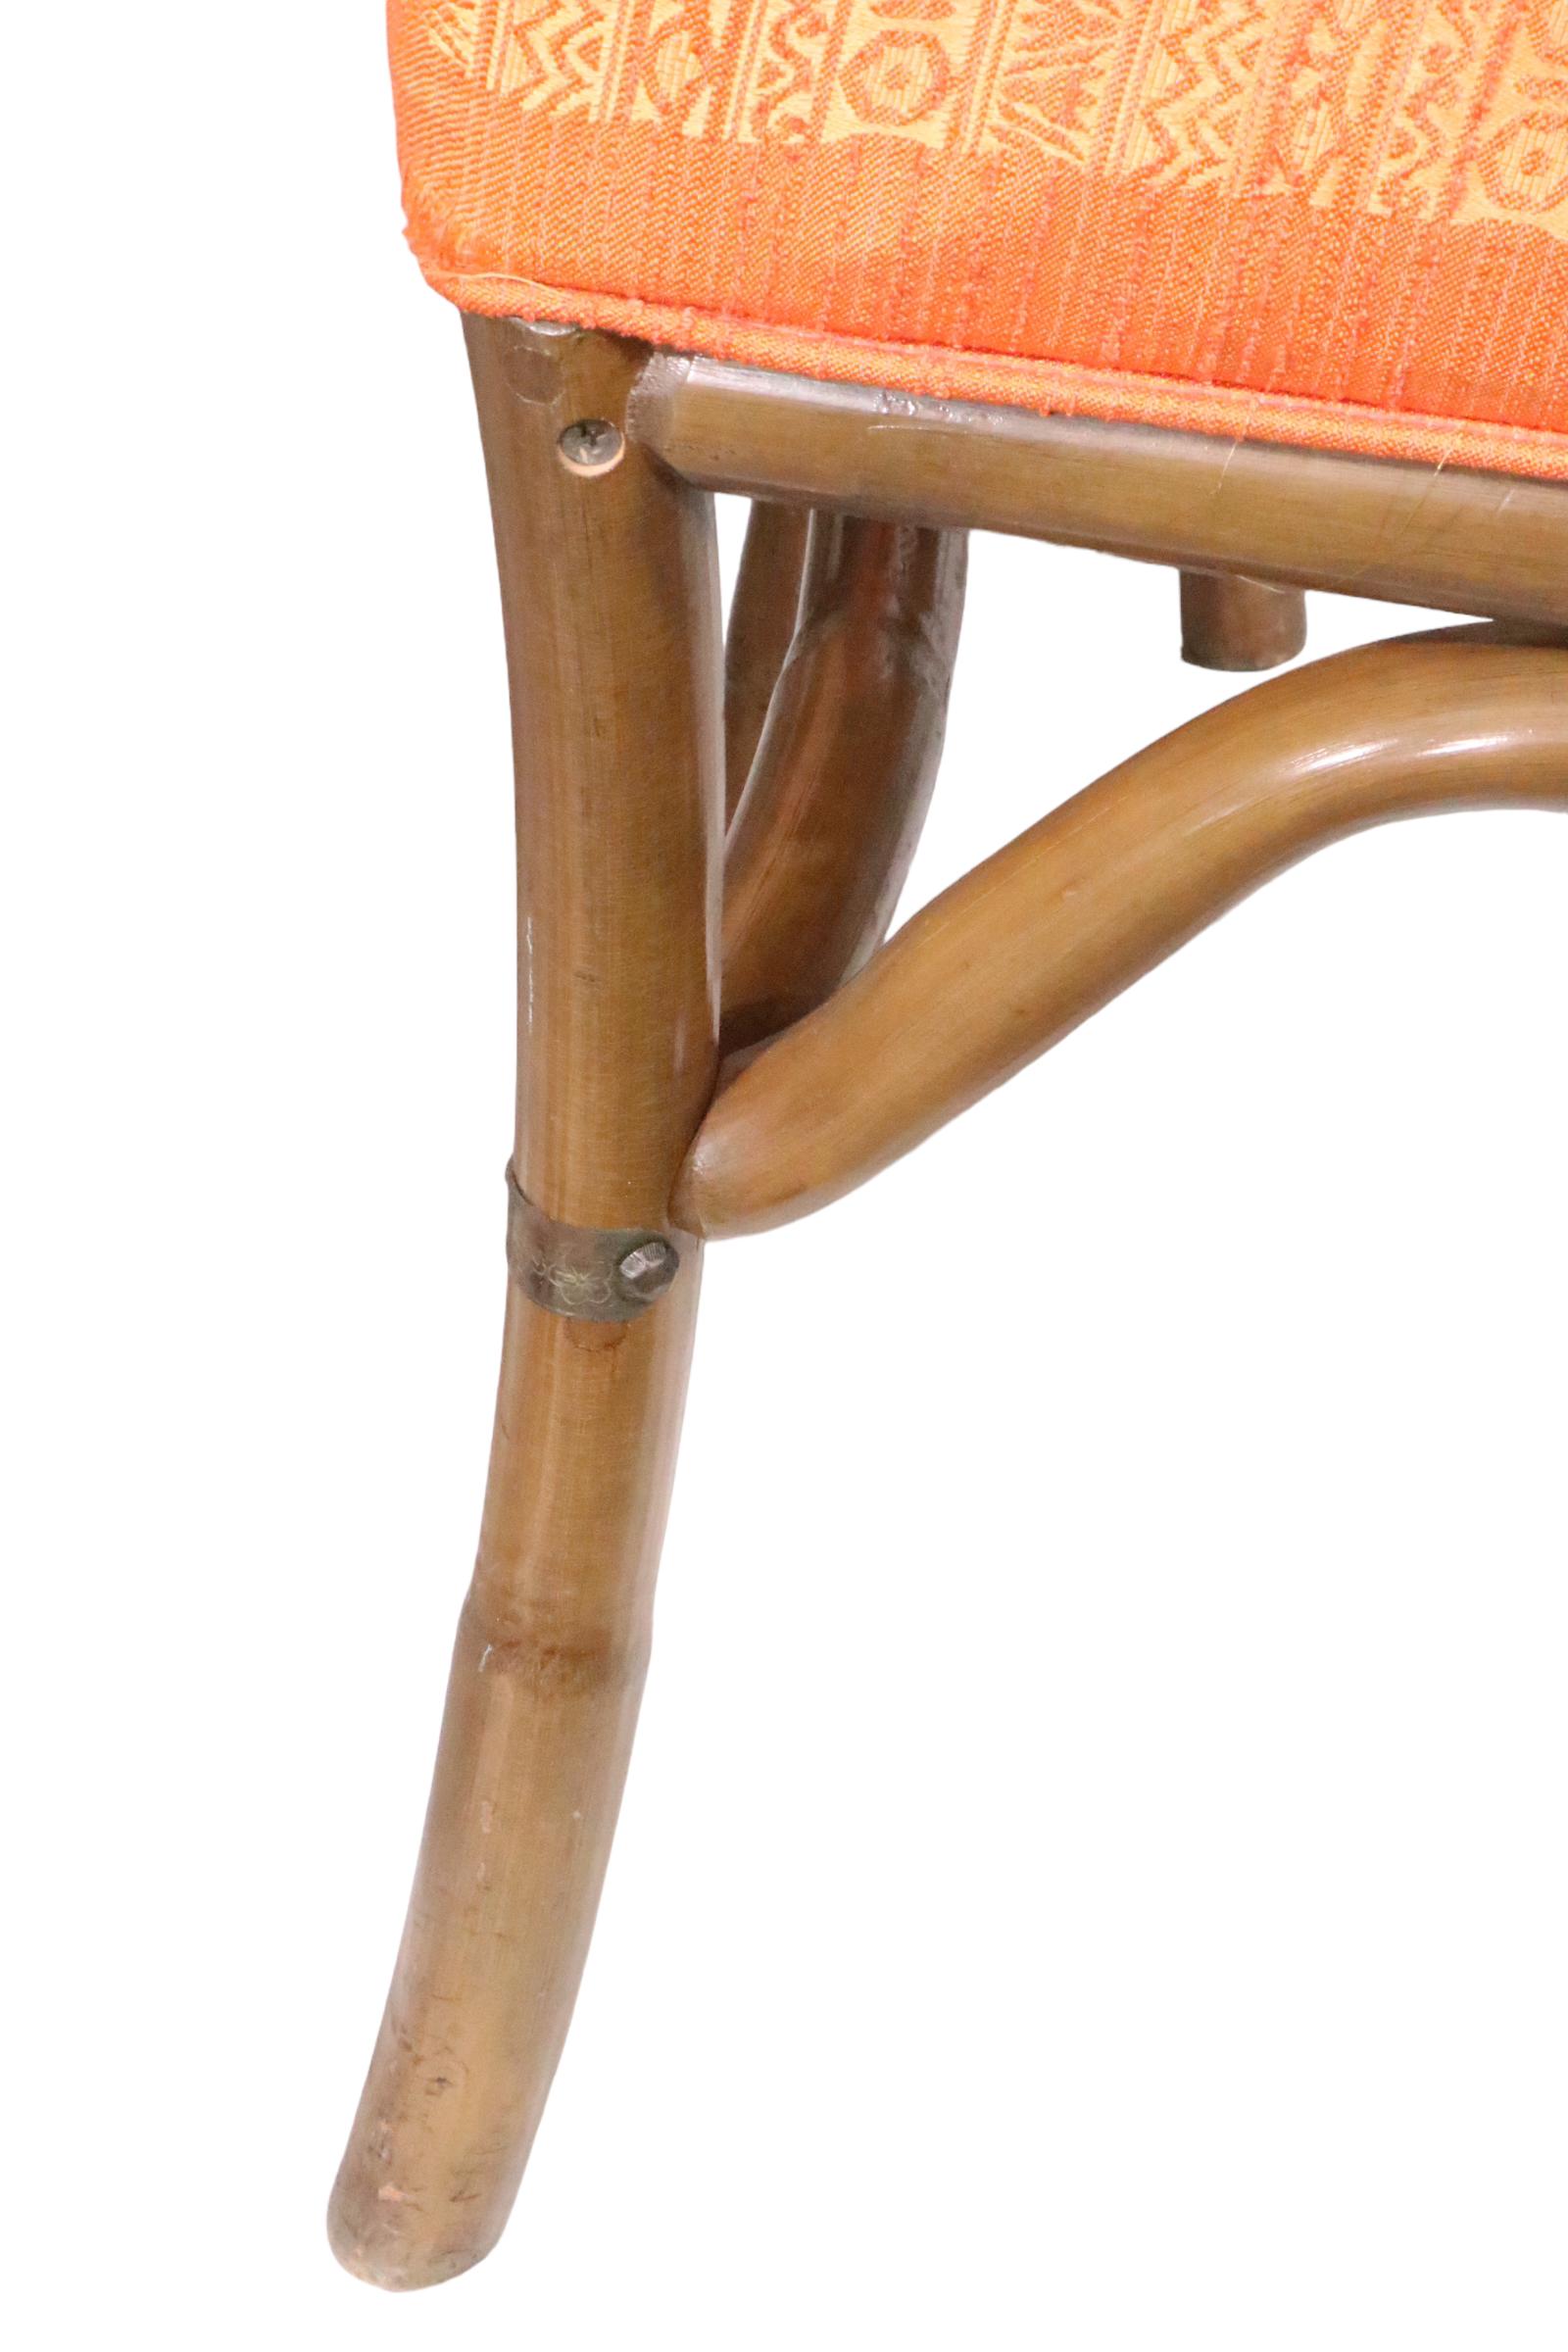 Ensemble de chaises de salle à manger voguish, chic, du milieu du siècle par Herbert Ritts, circa 1950/1960. Les chaises sont dotées d'un cadre en bambou et d'une garniture en laiton ciselé,  et des sièges rembourrés épais (à refaire). Les chaises